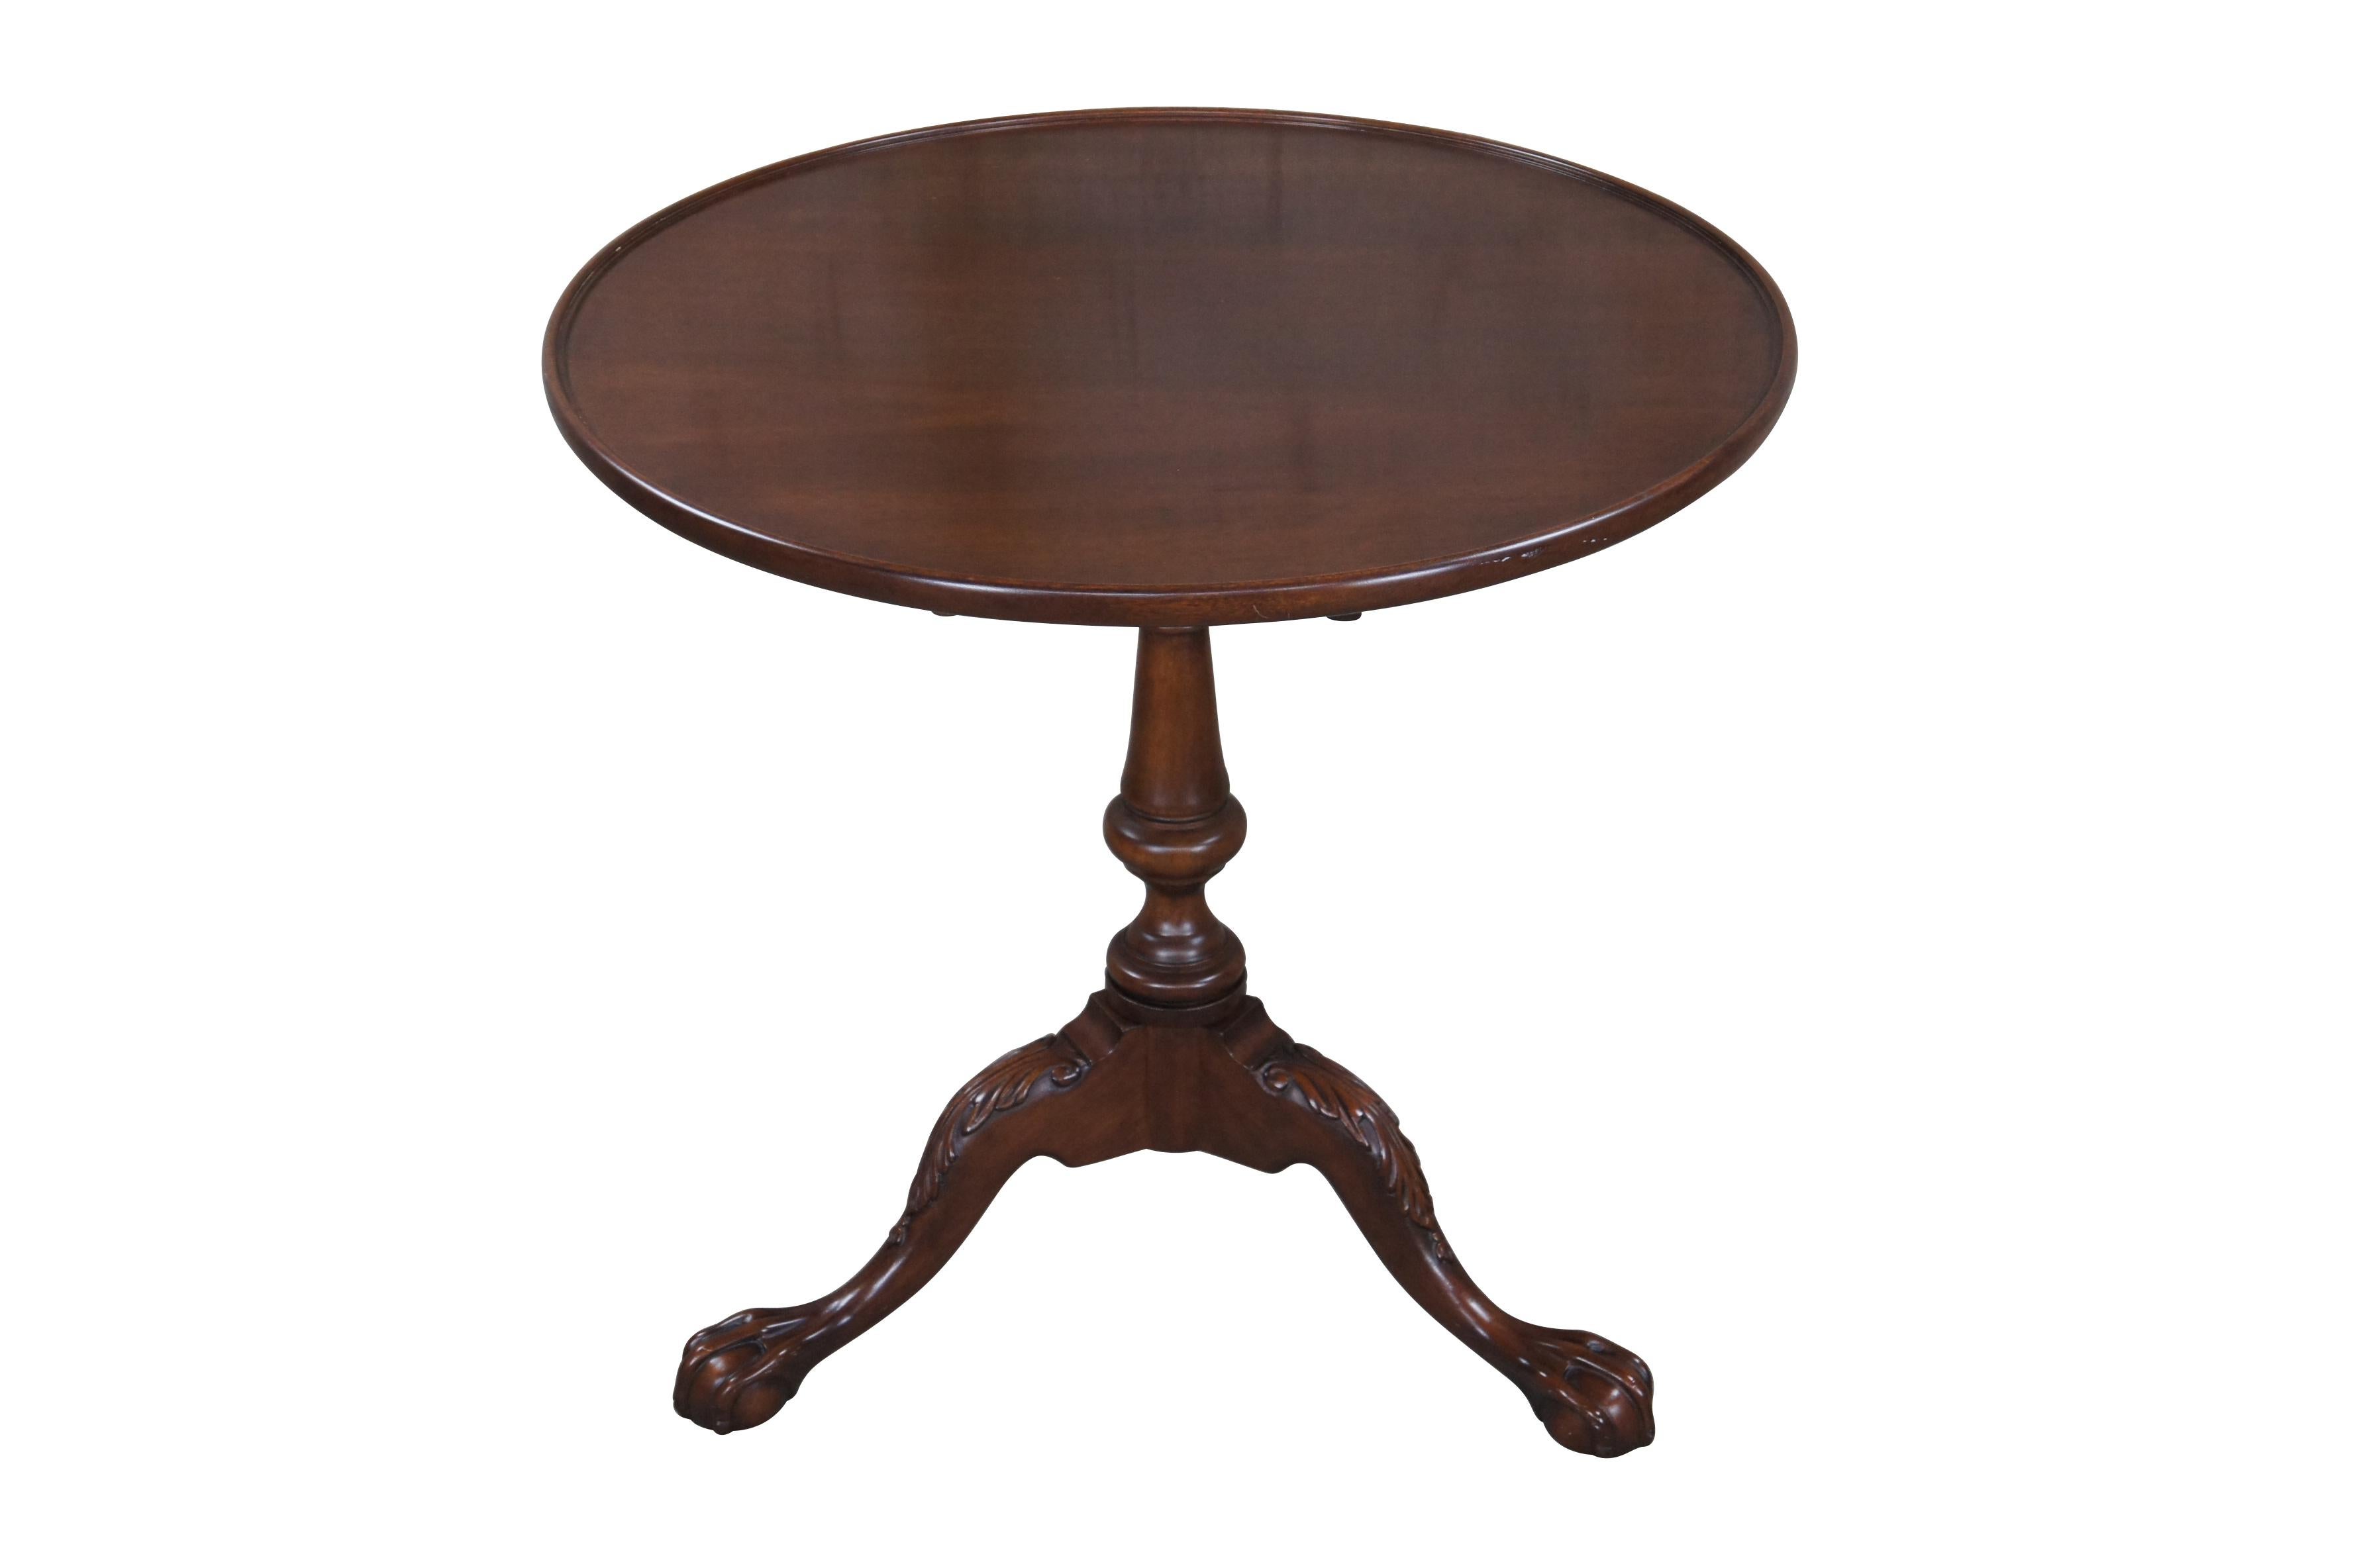 Une table à thé impressionnante s'inspirant des styles Coloni et Chippendale, vers la seconde moitié du 20e siècle. Fabriquée en acajou, elle présente un plateau rond incliné sur une cage d'oiseau tournante et une base à balustres tournés menant à